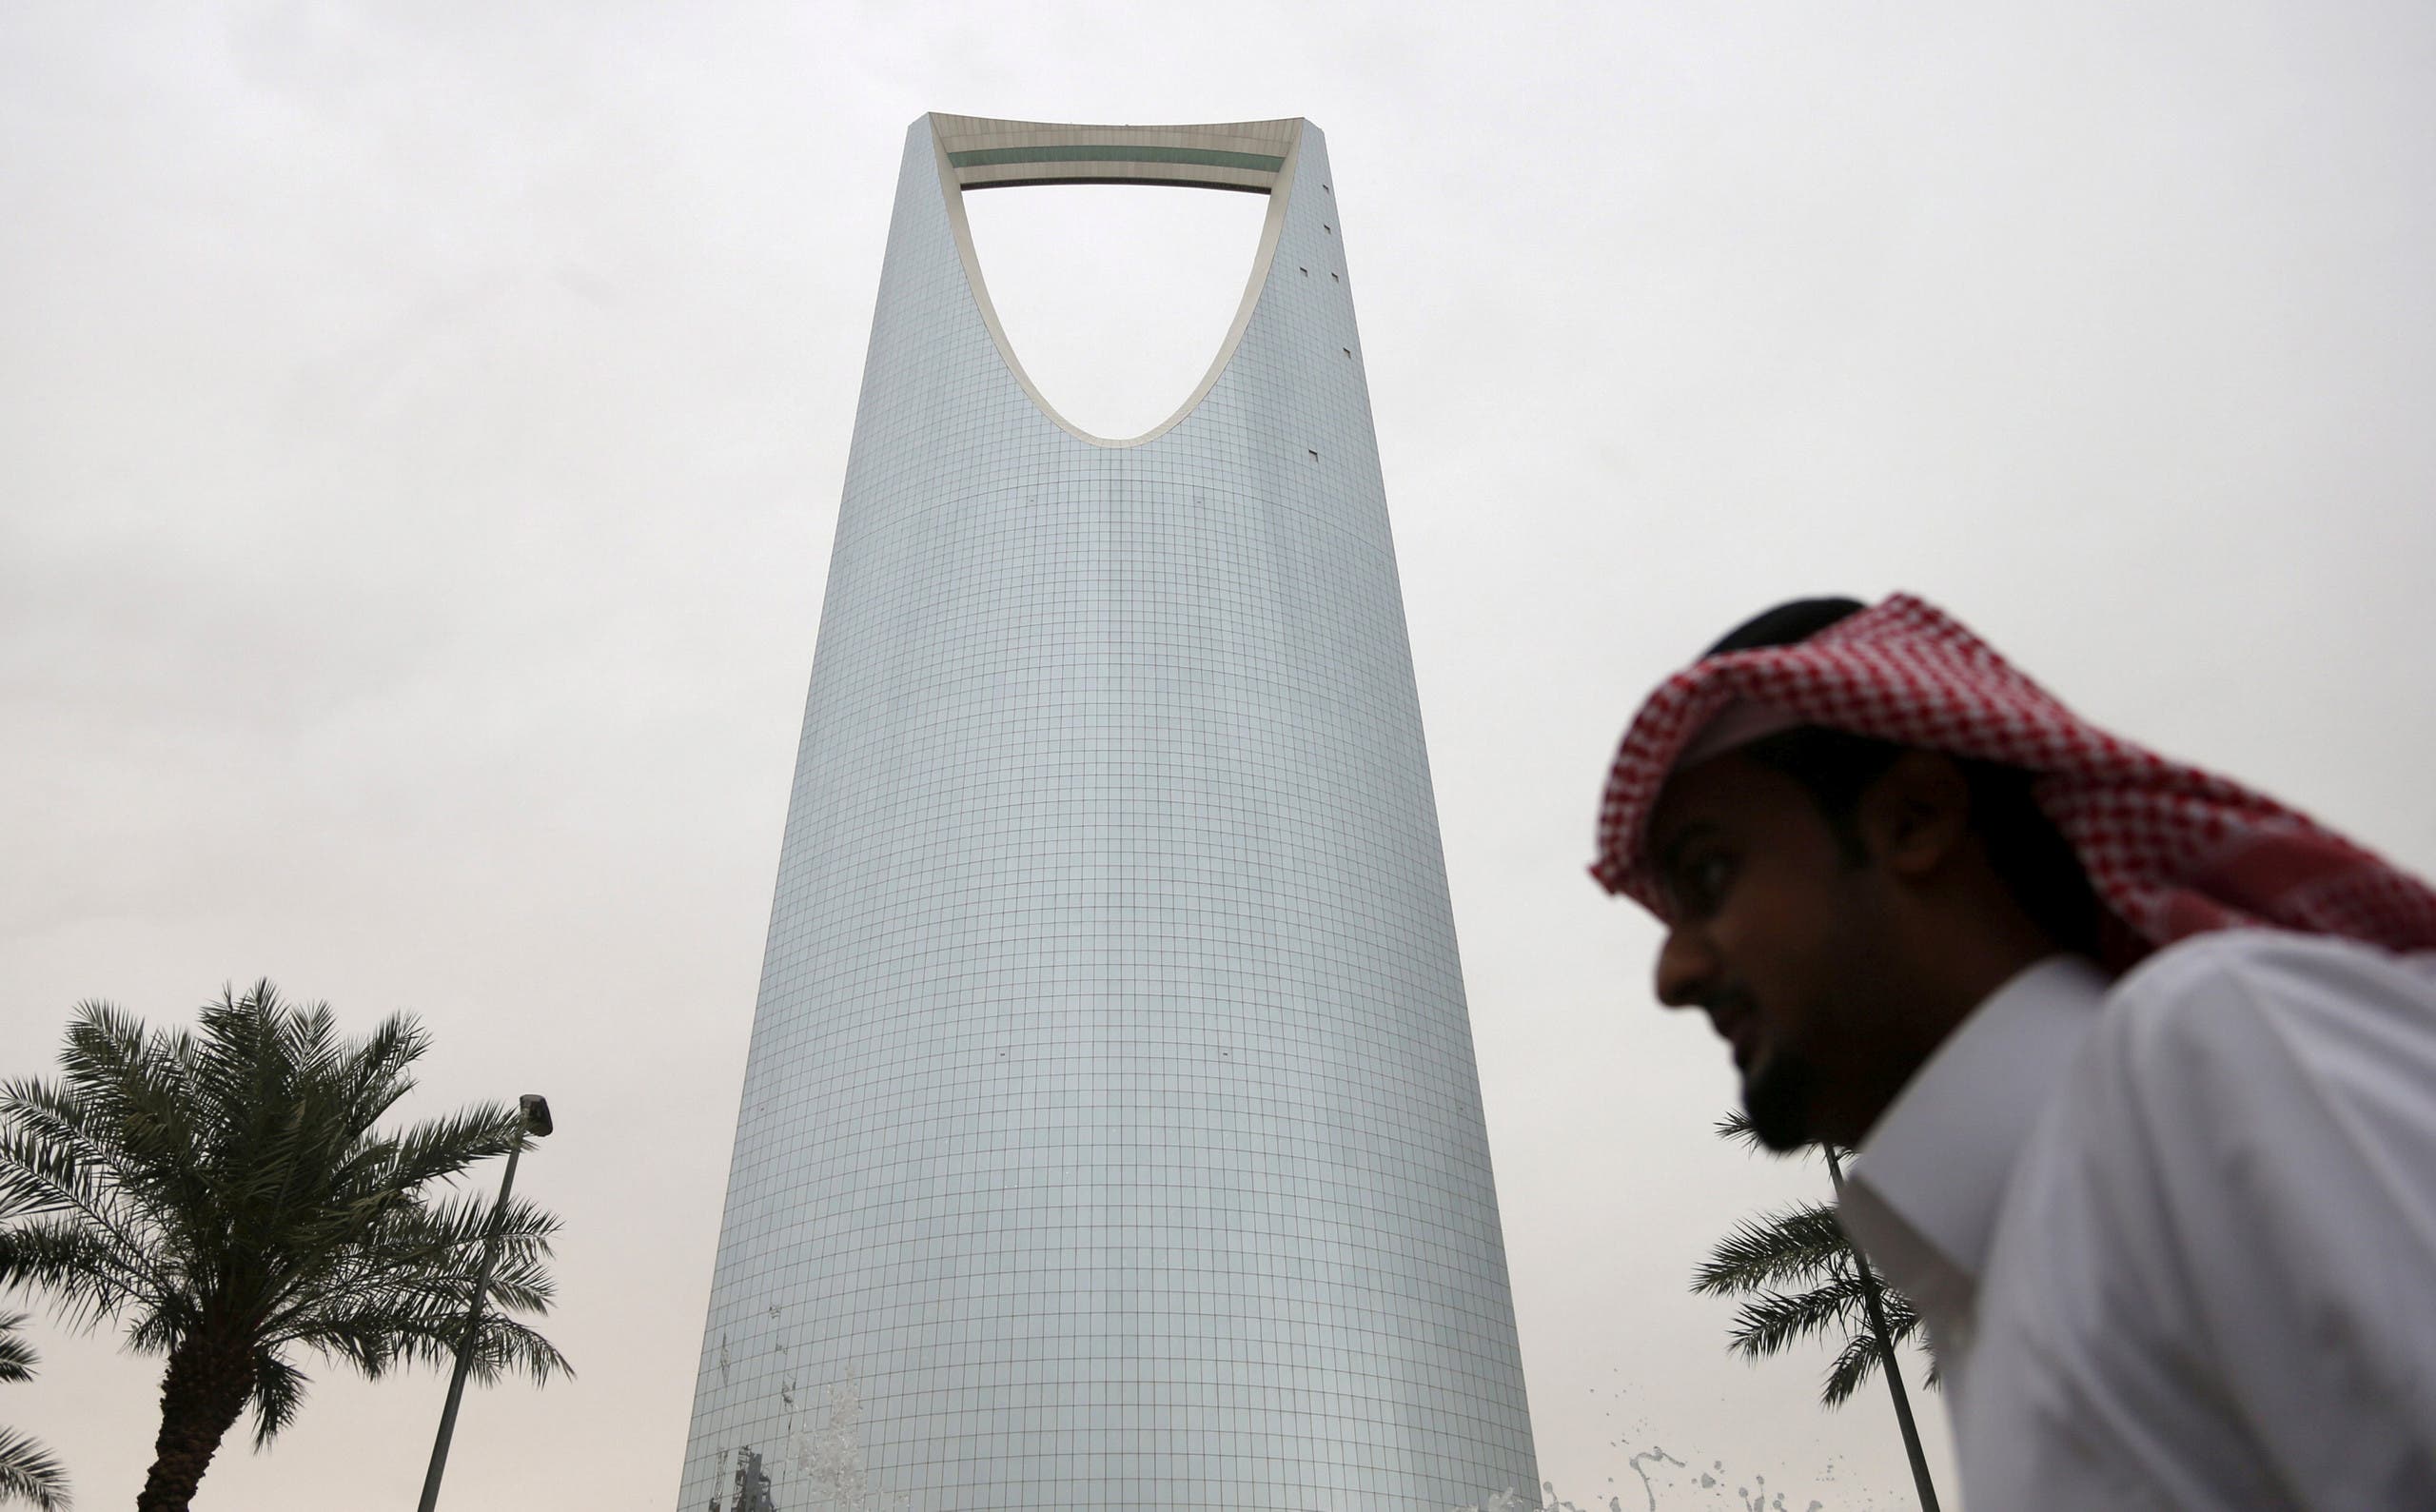 Un hombre pasa frente a la torre Kingdom Center en Riyadh, Arabia Saudita. (Foto de archivo: Reuters)